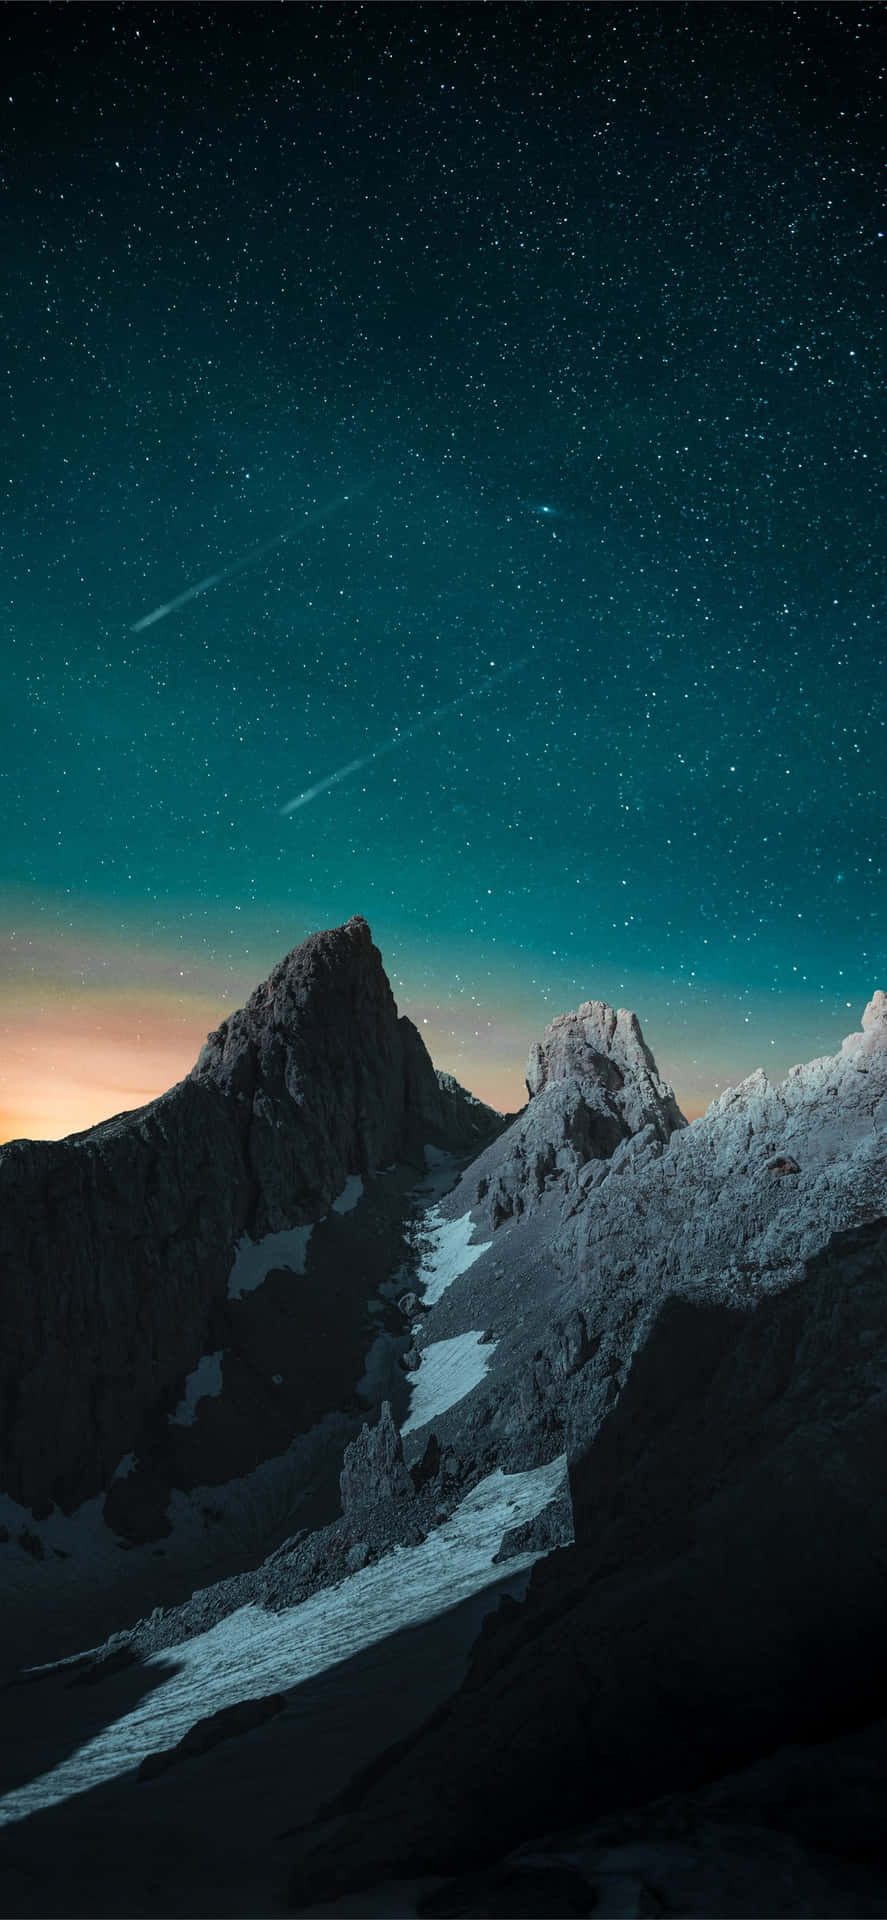 Bjerge Med Skydende Stjerner I Aftenskyen Wallpaper